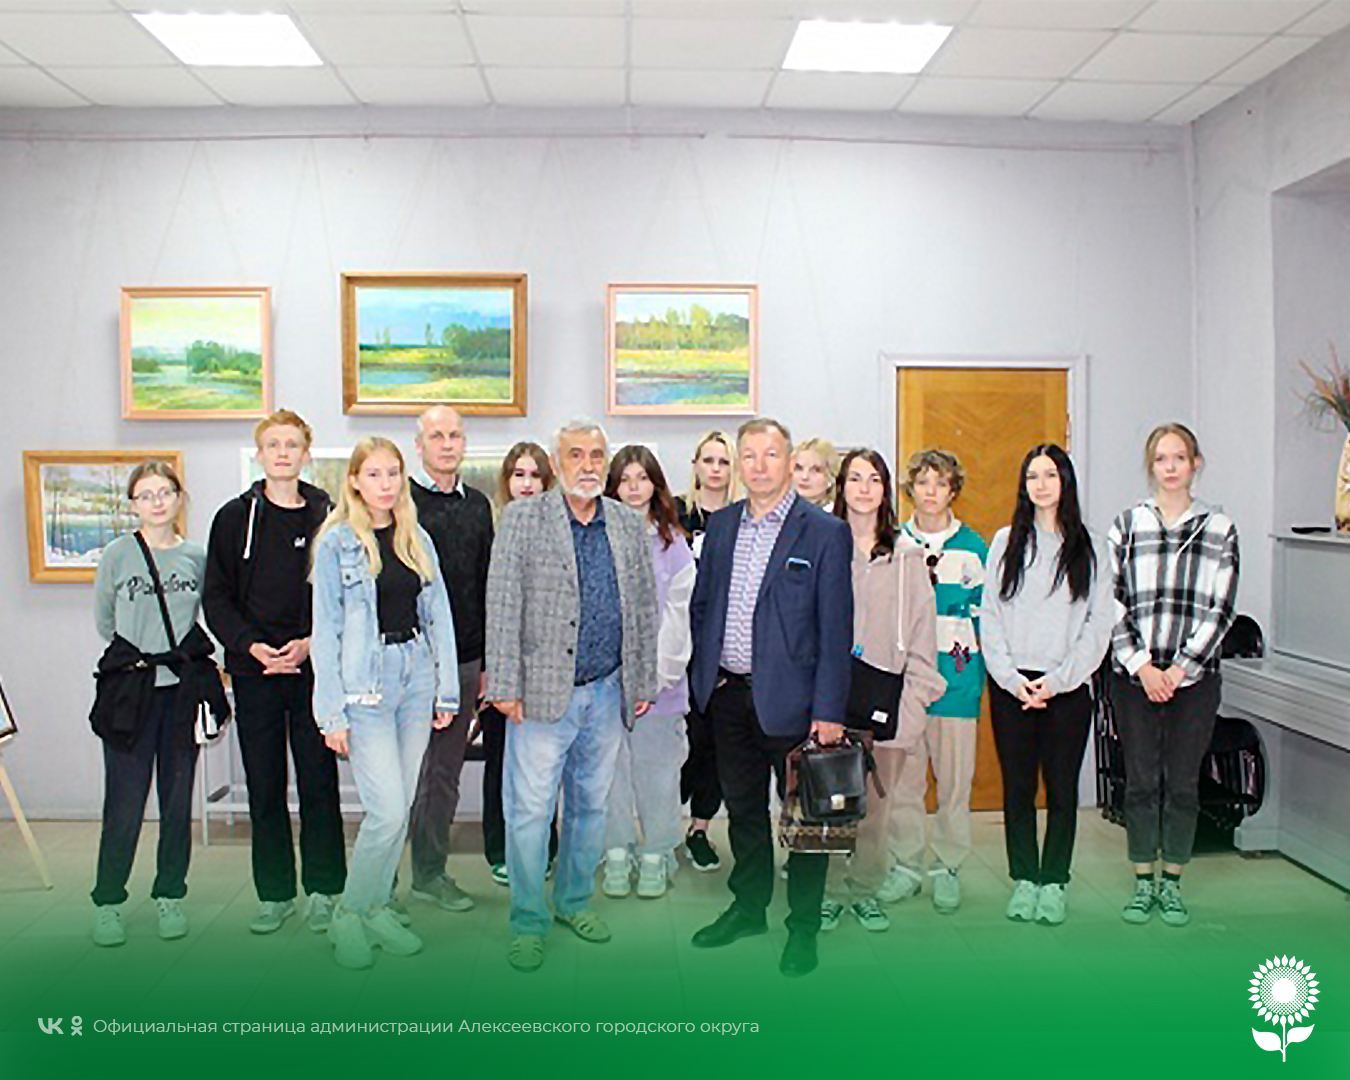 В Алексеевском краеведческом музее состоялось открытие персональной художественной выставки работ преподавателя ОГАПОУ «Алексеевский колледж».